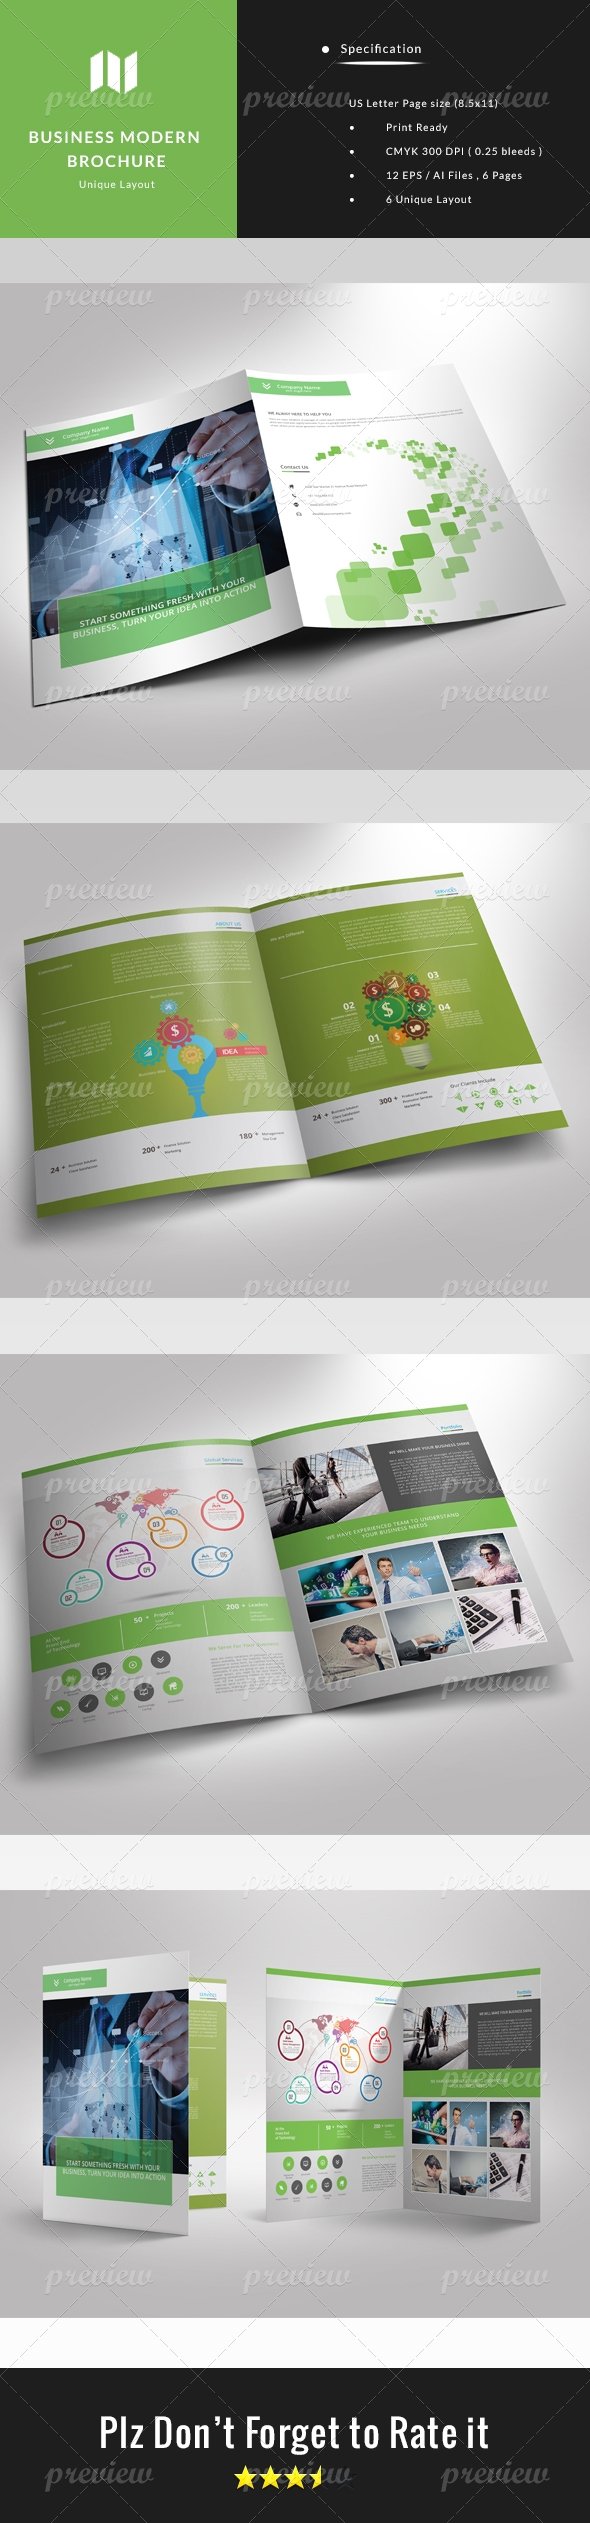 codegrape-3603-business-modern-brochure